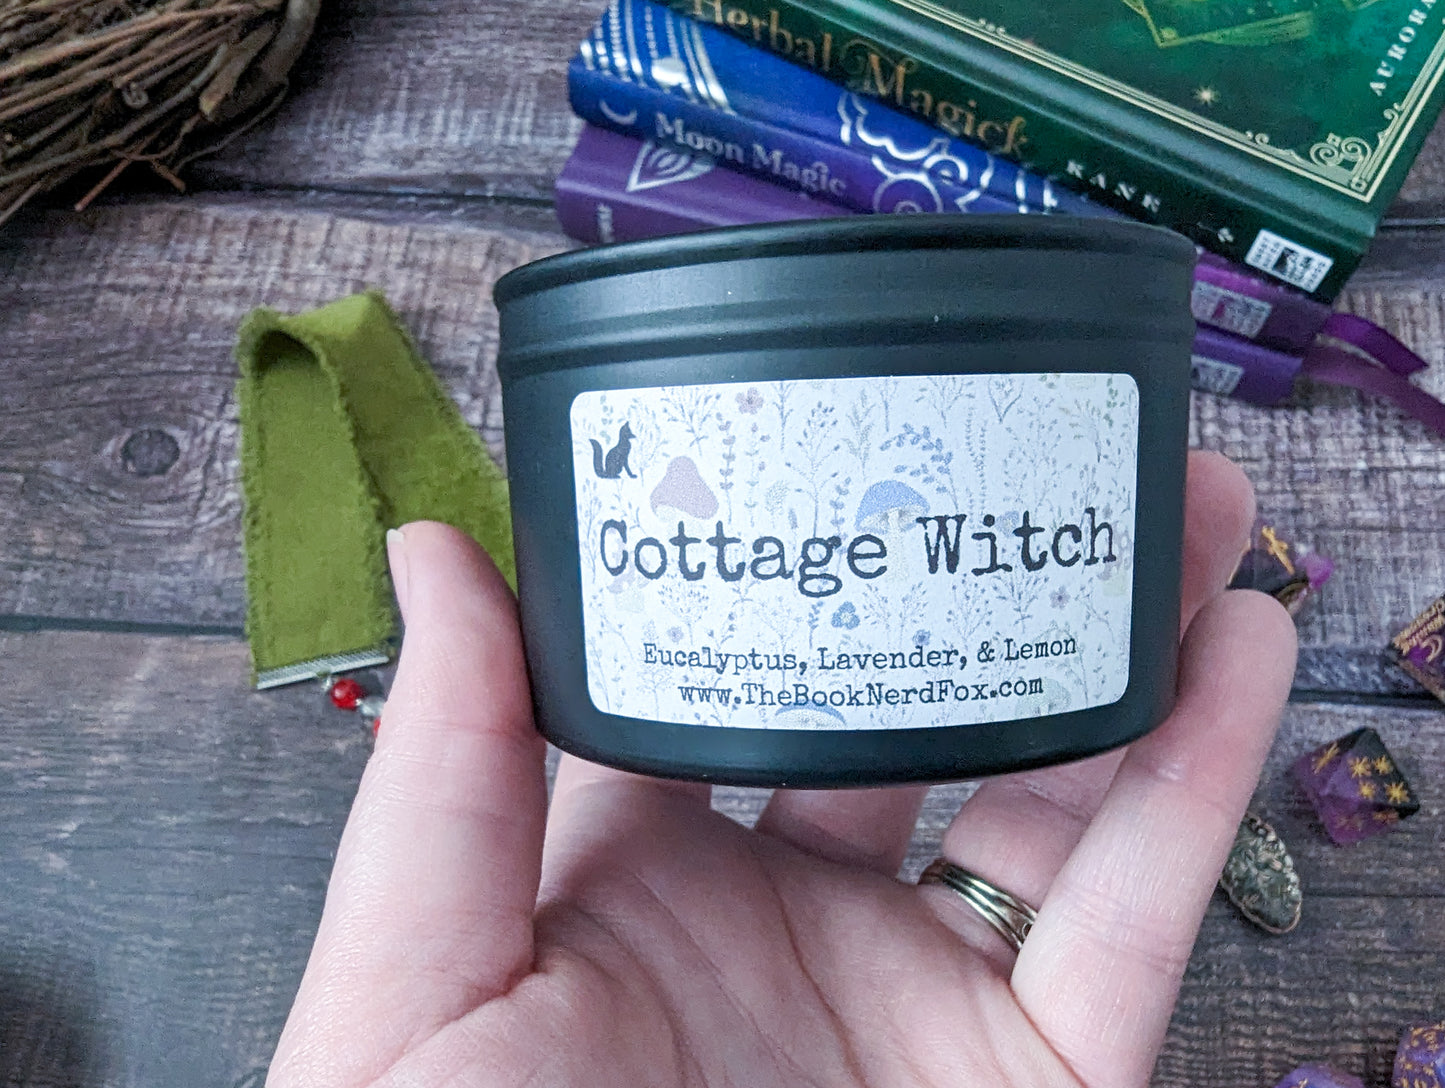 Cottage Witch - Eucalyptus, Lavender, & Lemon